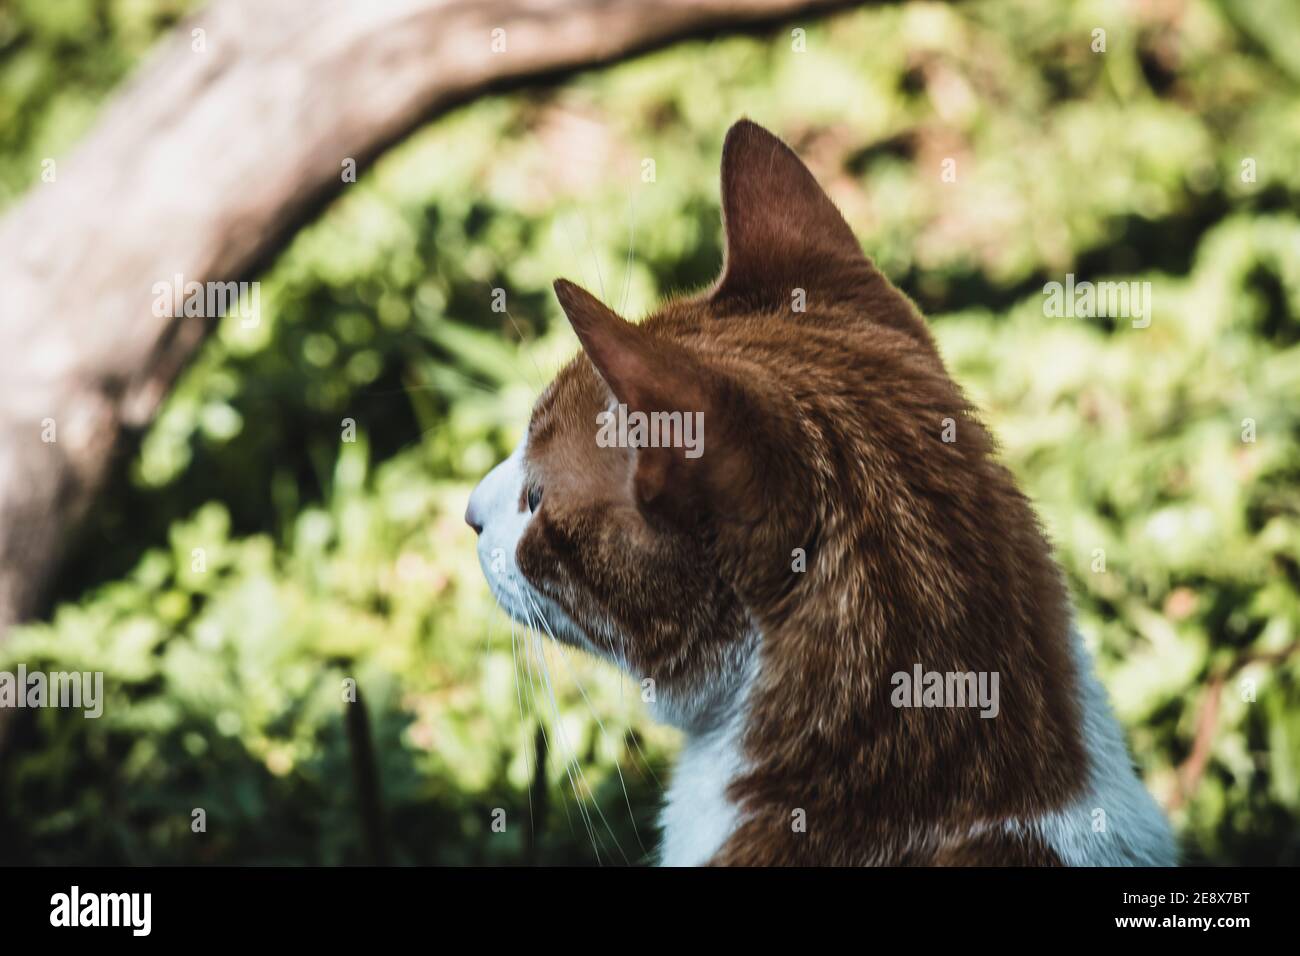 cat in the garden Stock Photo